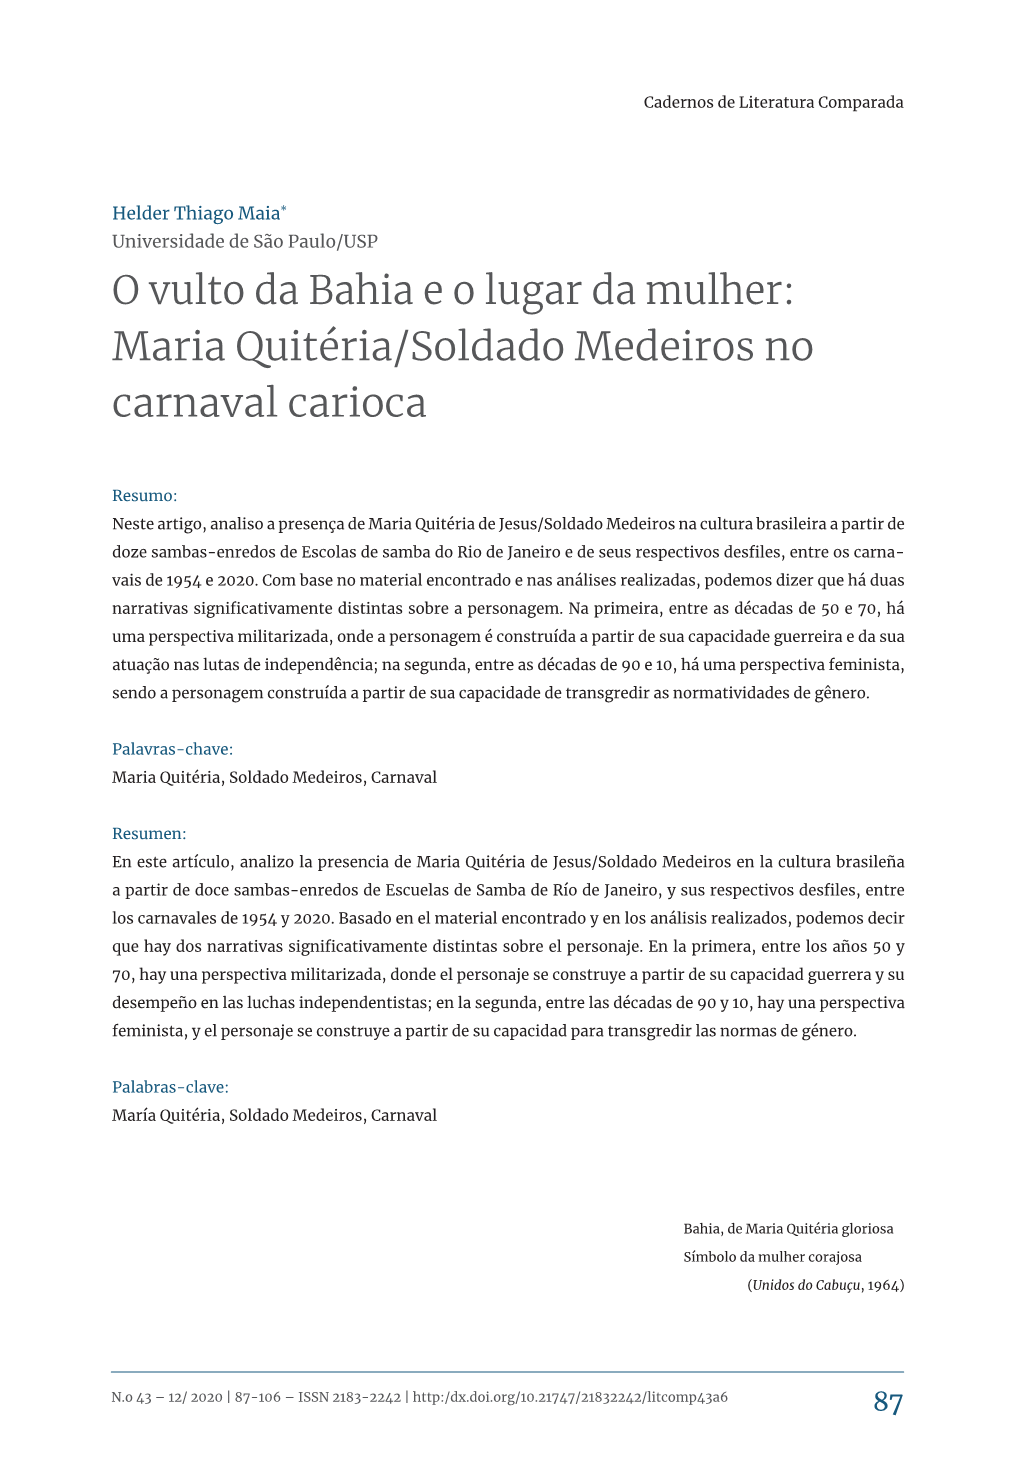 O Vulto Da Bahia E O Lugar Da Mulher: Maria Quitéria/Soldado Medeiros No Carnaval Carioca